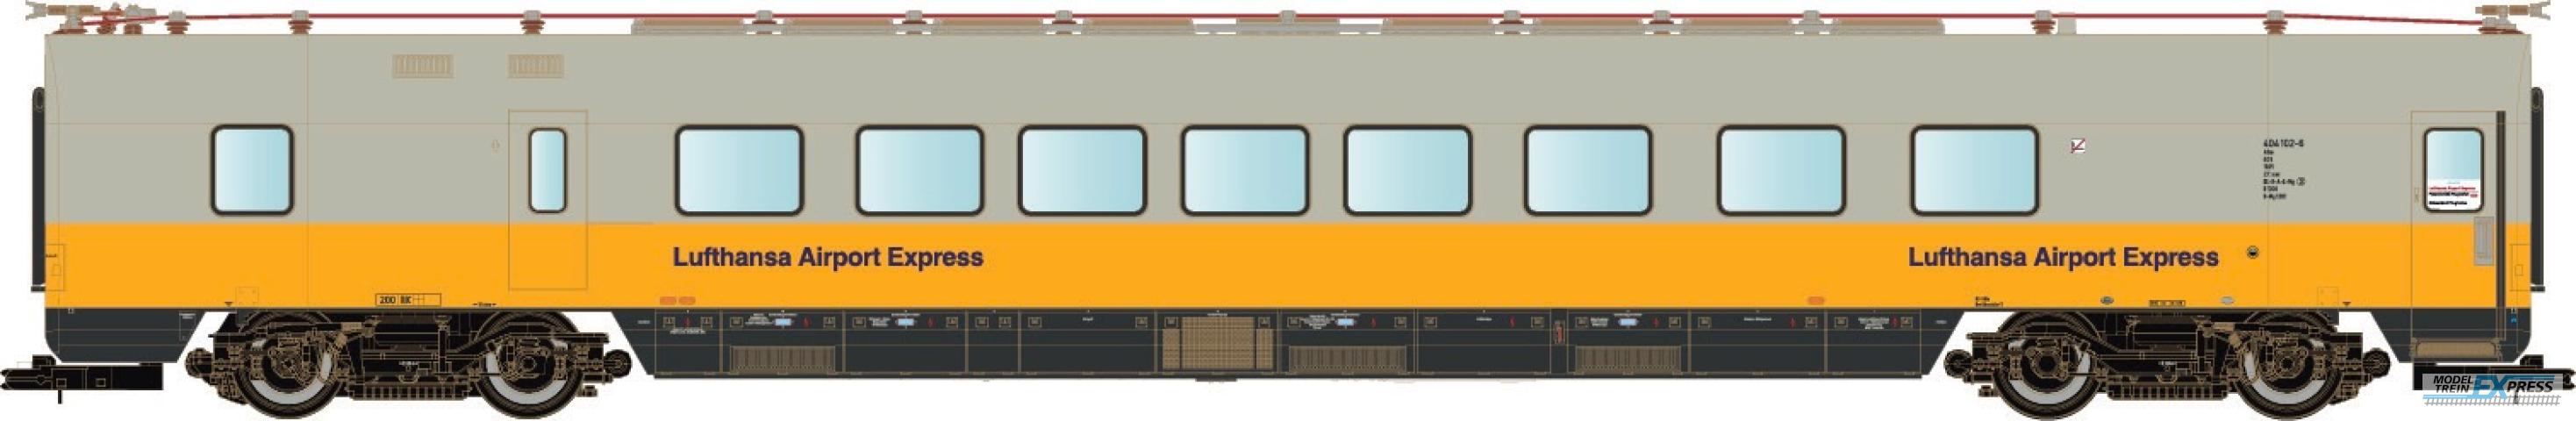 LS Models 16507 ET 403, restauratie-rijtuig, geel/grijs,  Lufthansa Airport Express, versterkingswagen  /  Ep. IVb  /  DB  /  HO  /  AC  /  1 P.